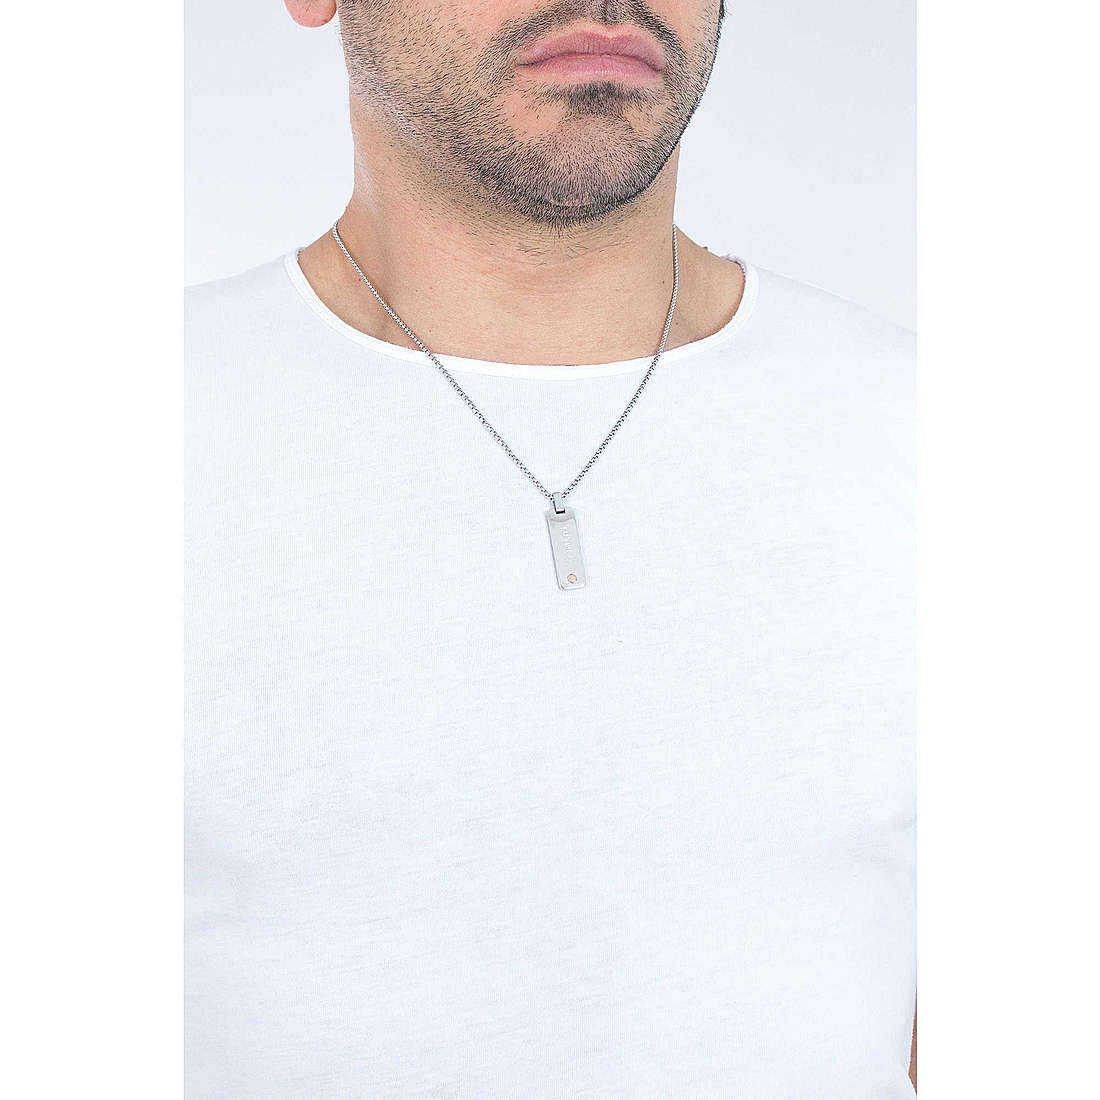 Breil necklaces Zodiac man TJ2308 wearing